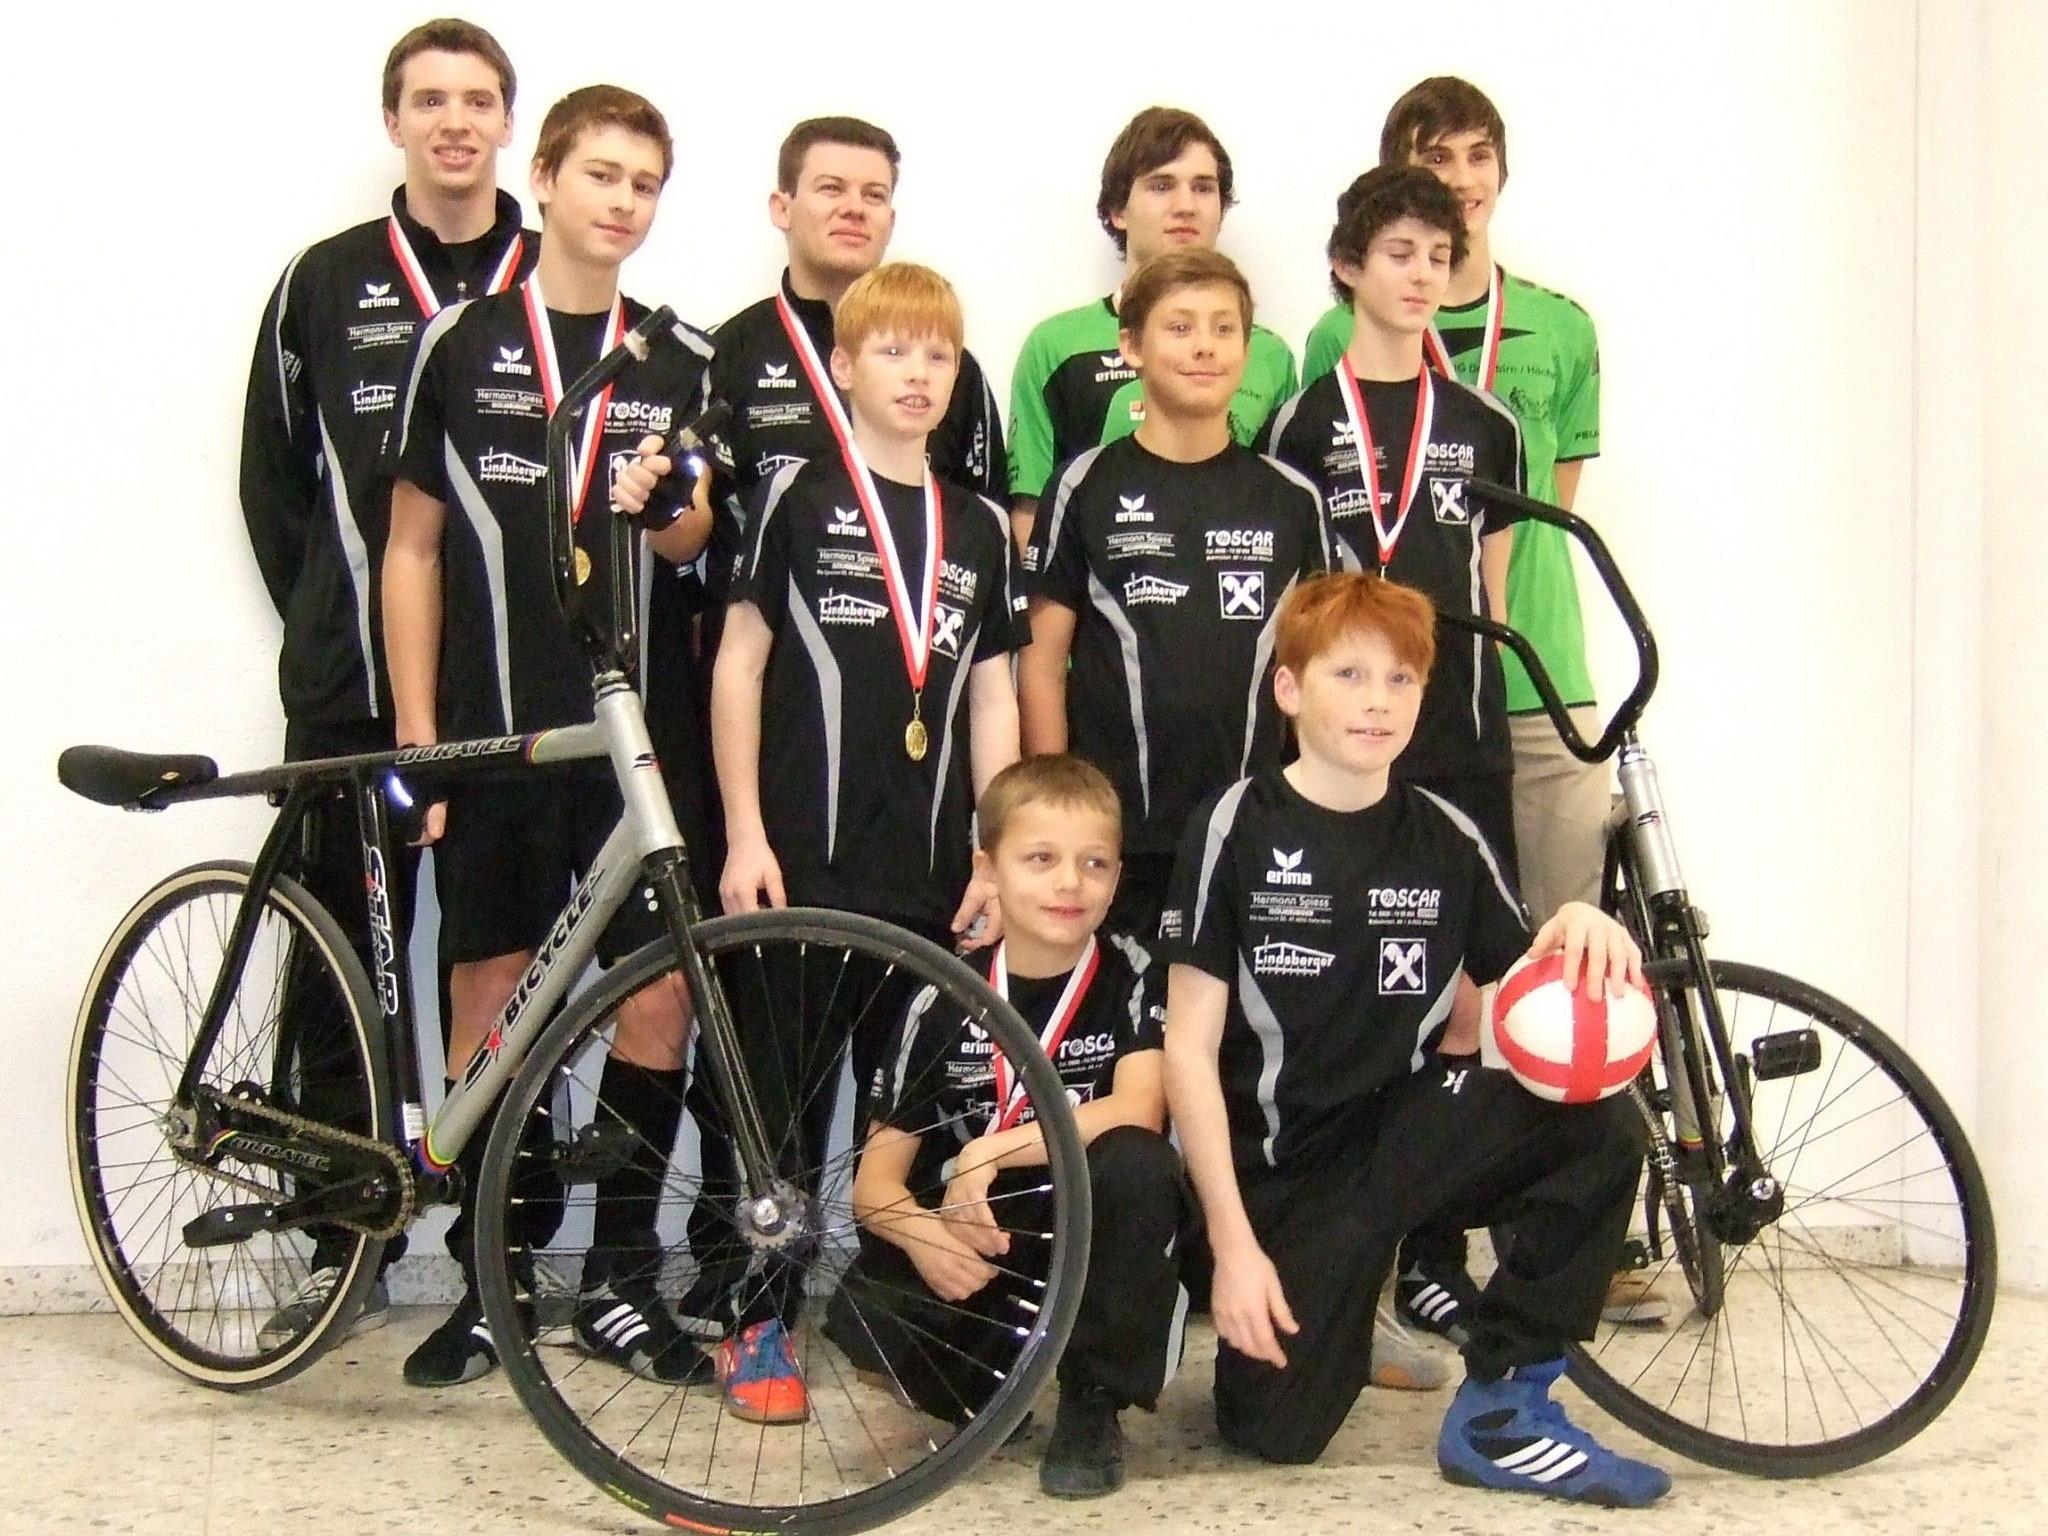 Dornbirns Radballer überzeugten bei der Bodenseemeisterschaft